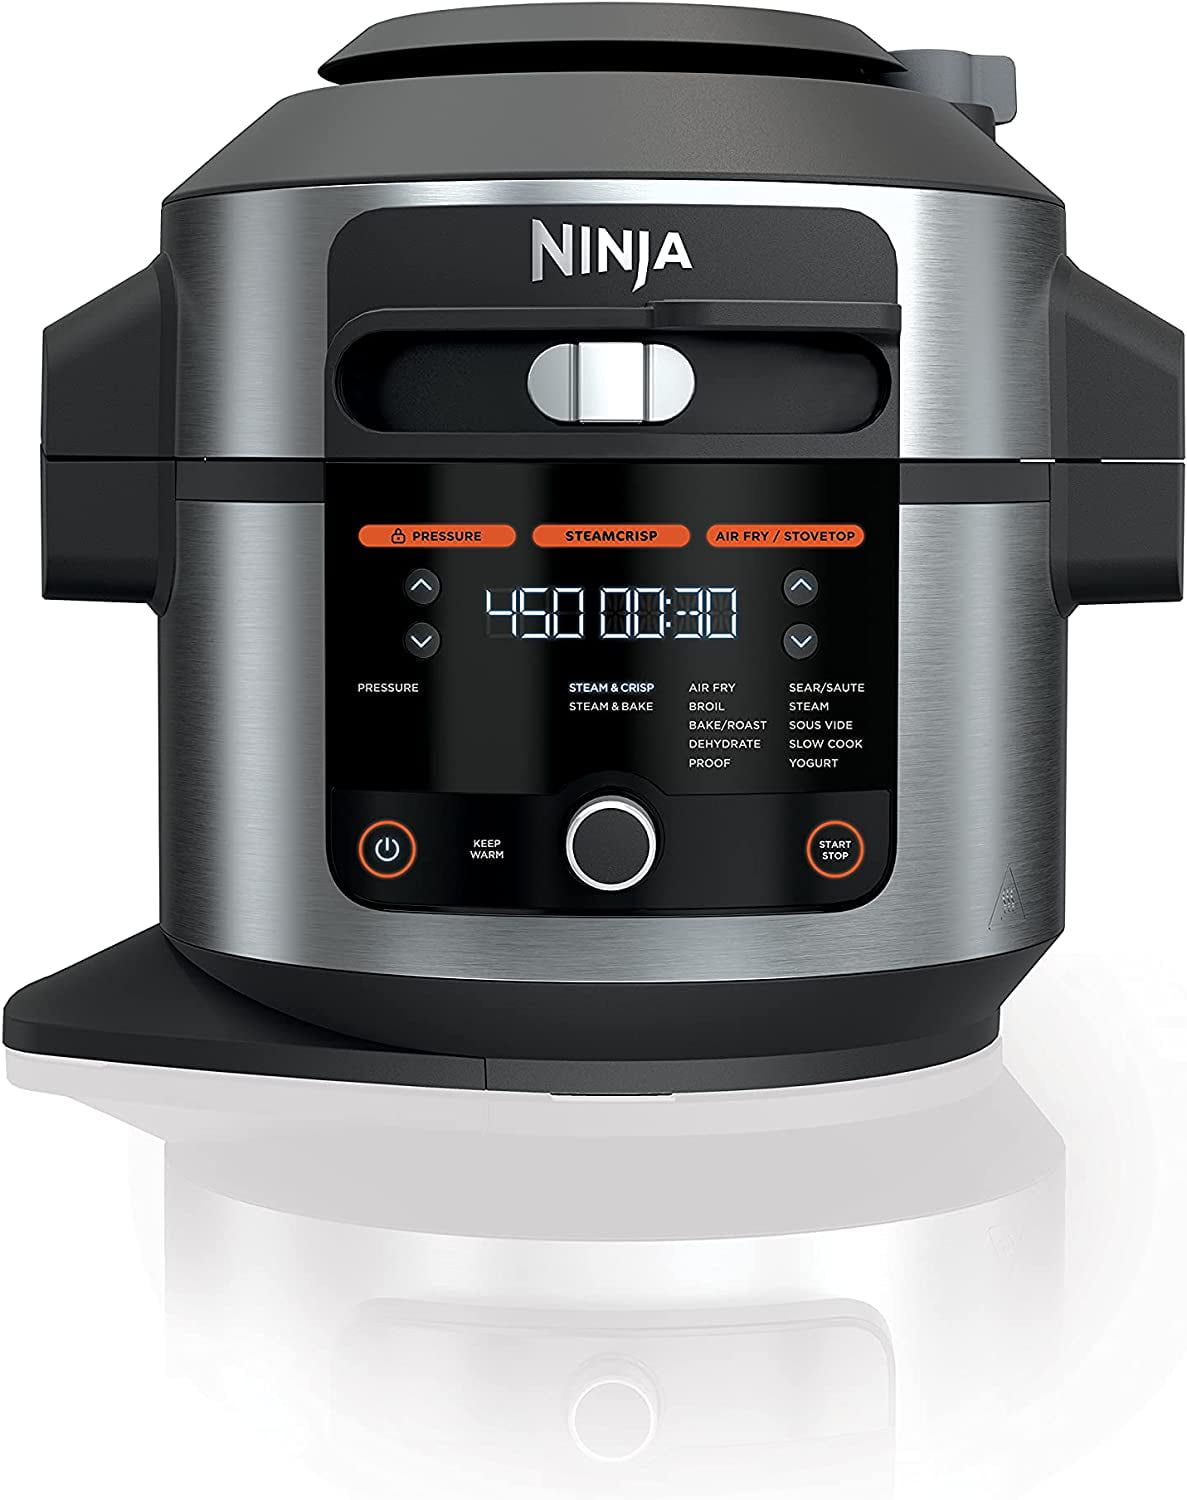 Ninja Foodi 14-in-1 Pressure Cooker